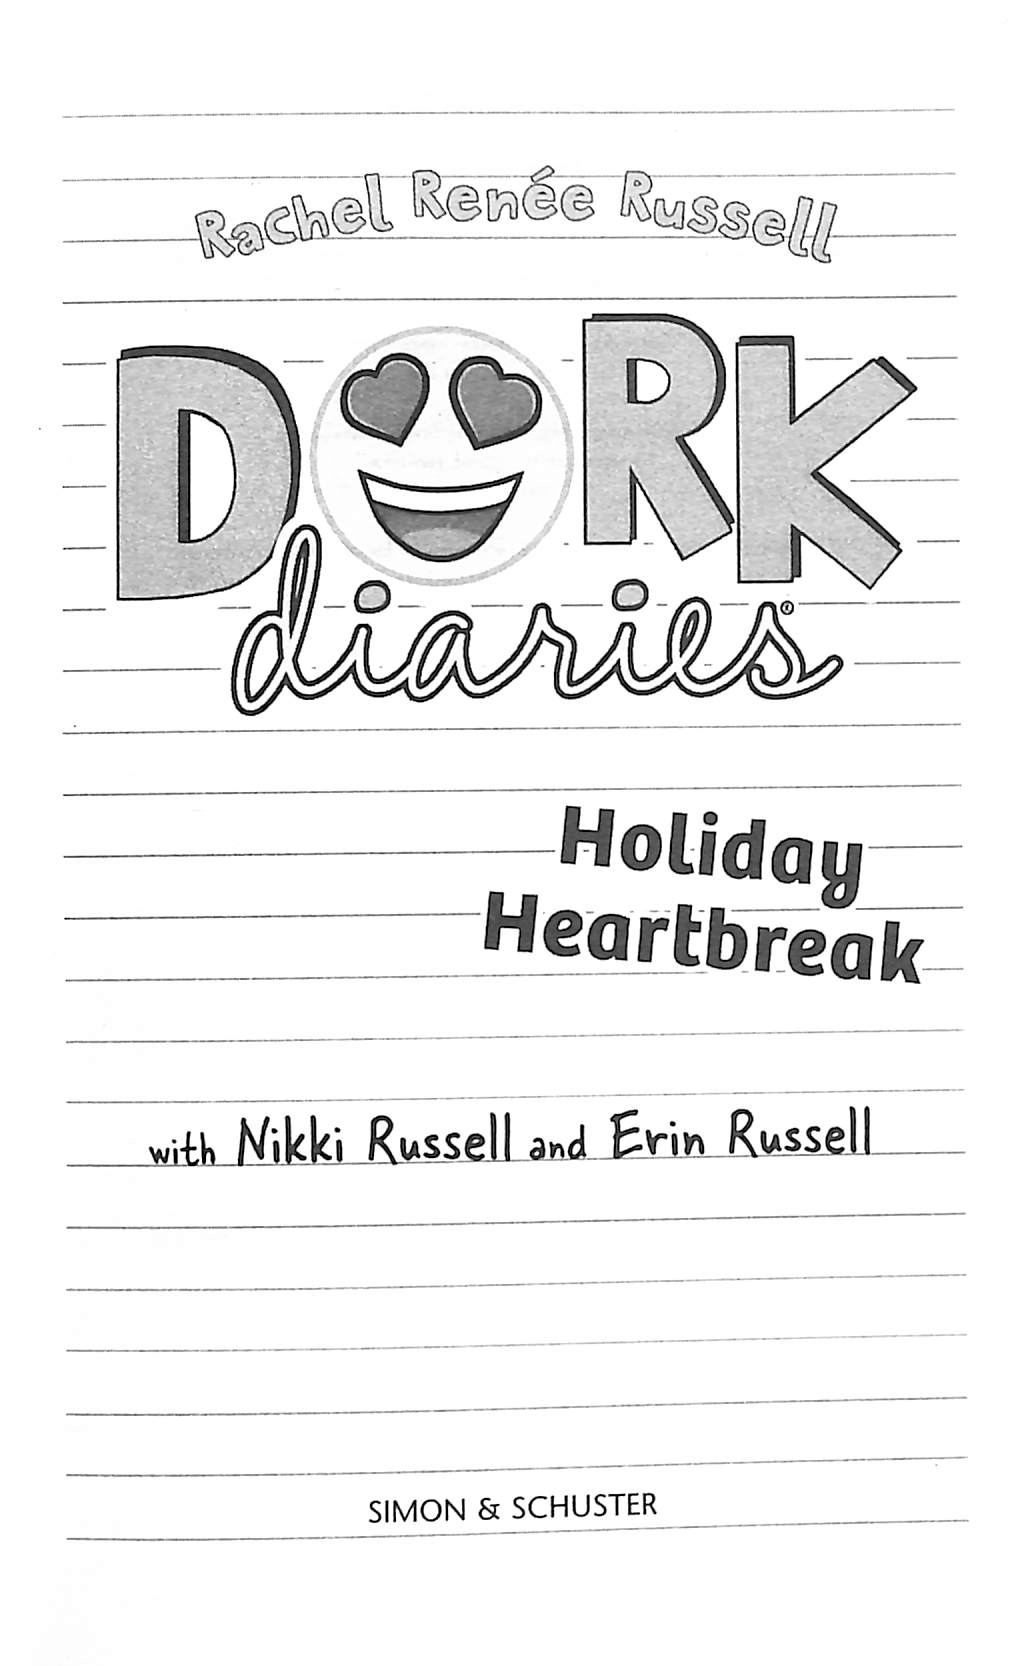 Holiday heartbreak by Rachel Renée Russell